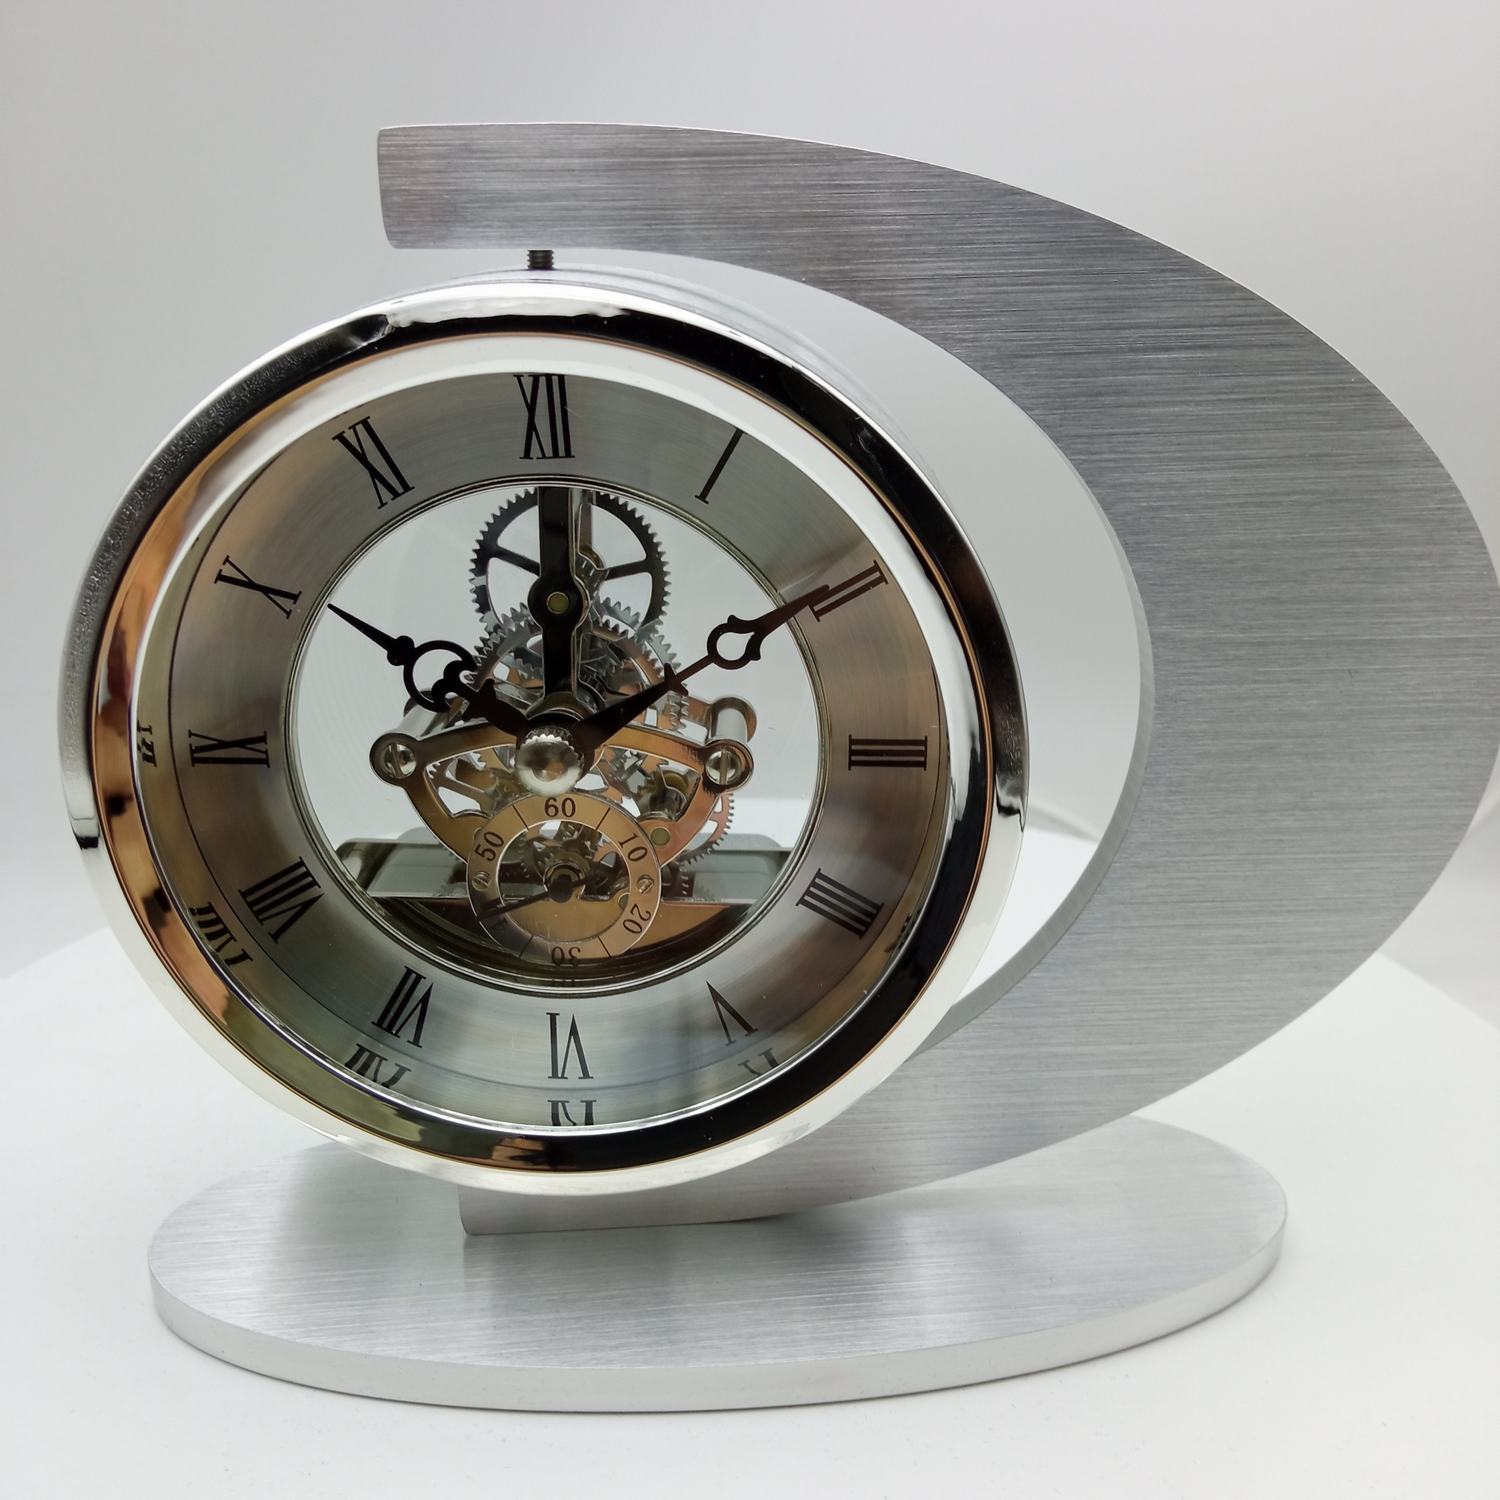 轻奢个性设计工艺品座钟银色金属钟壳合金齿轮透视机芯装饰品台钟